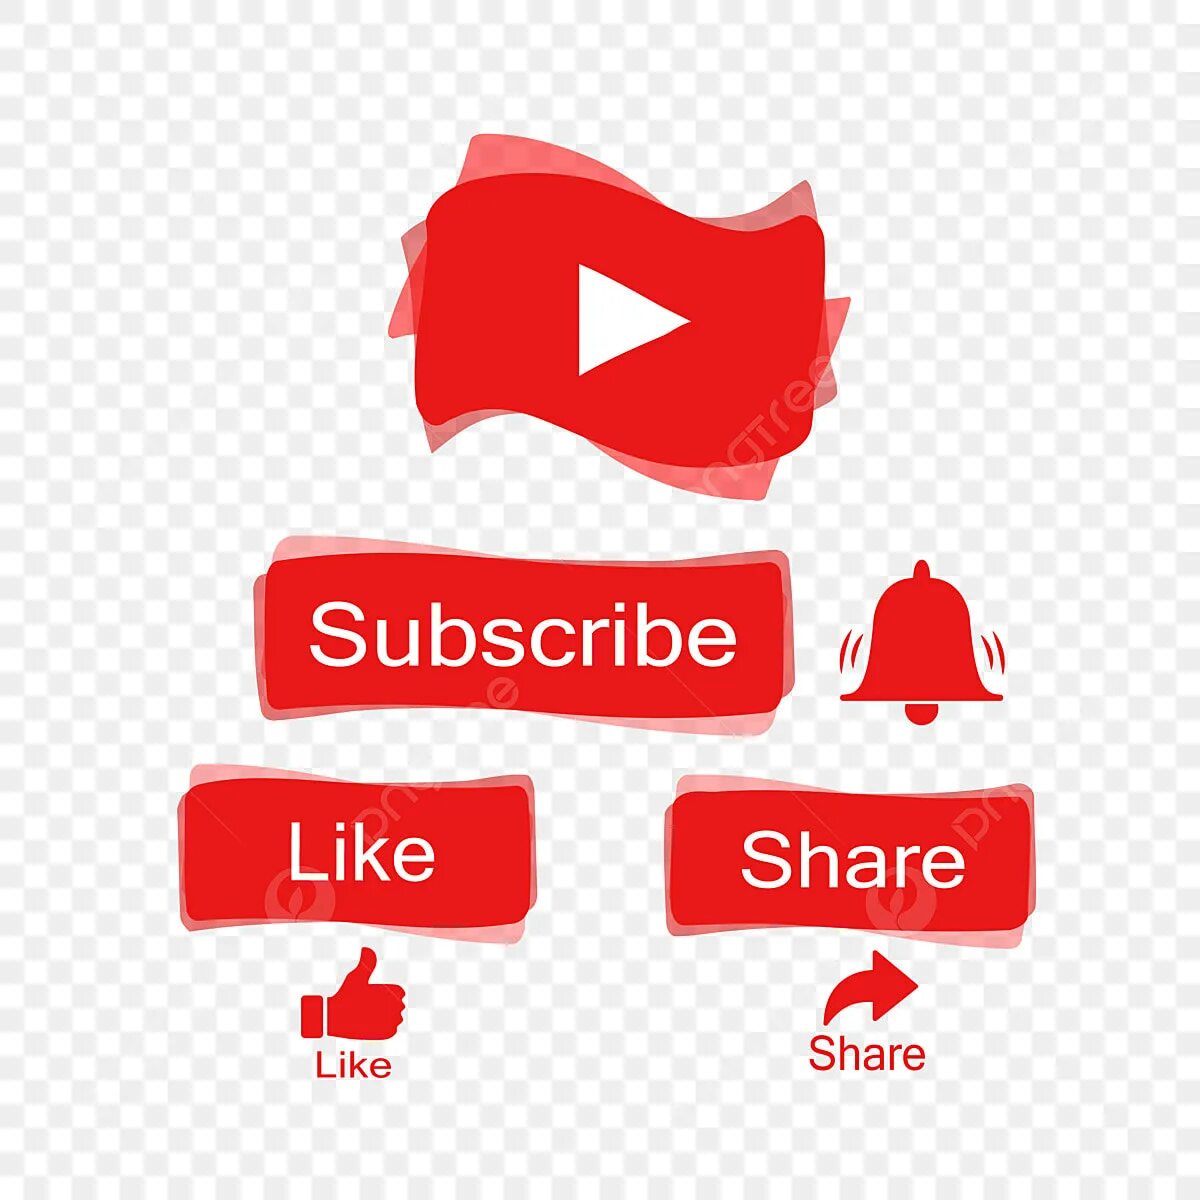 Like share Subscribe. Share like Subsk ribe. Like and Subscribe PNG. Like comment share PNG. Subscribe shares